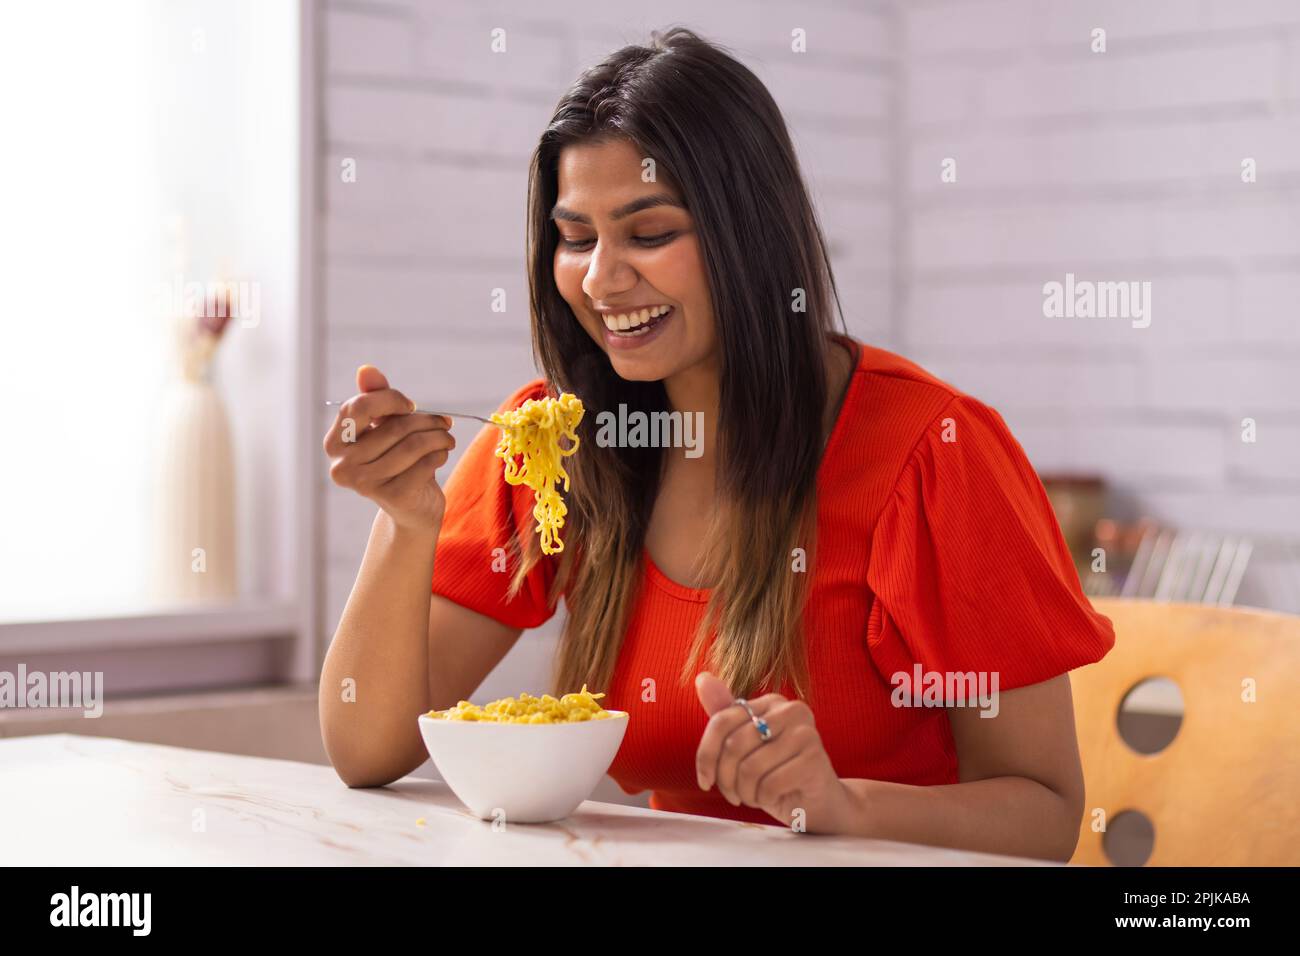 Porträt einer Frau, die Nudeln in der Küche isst Stockfoto